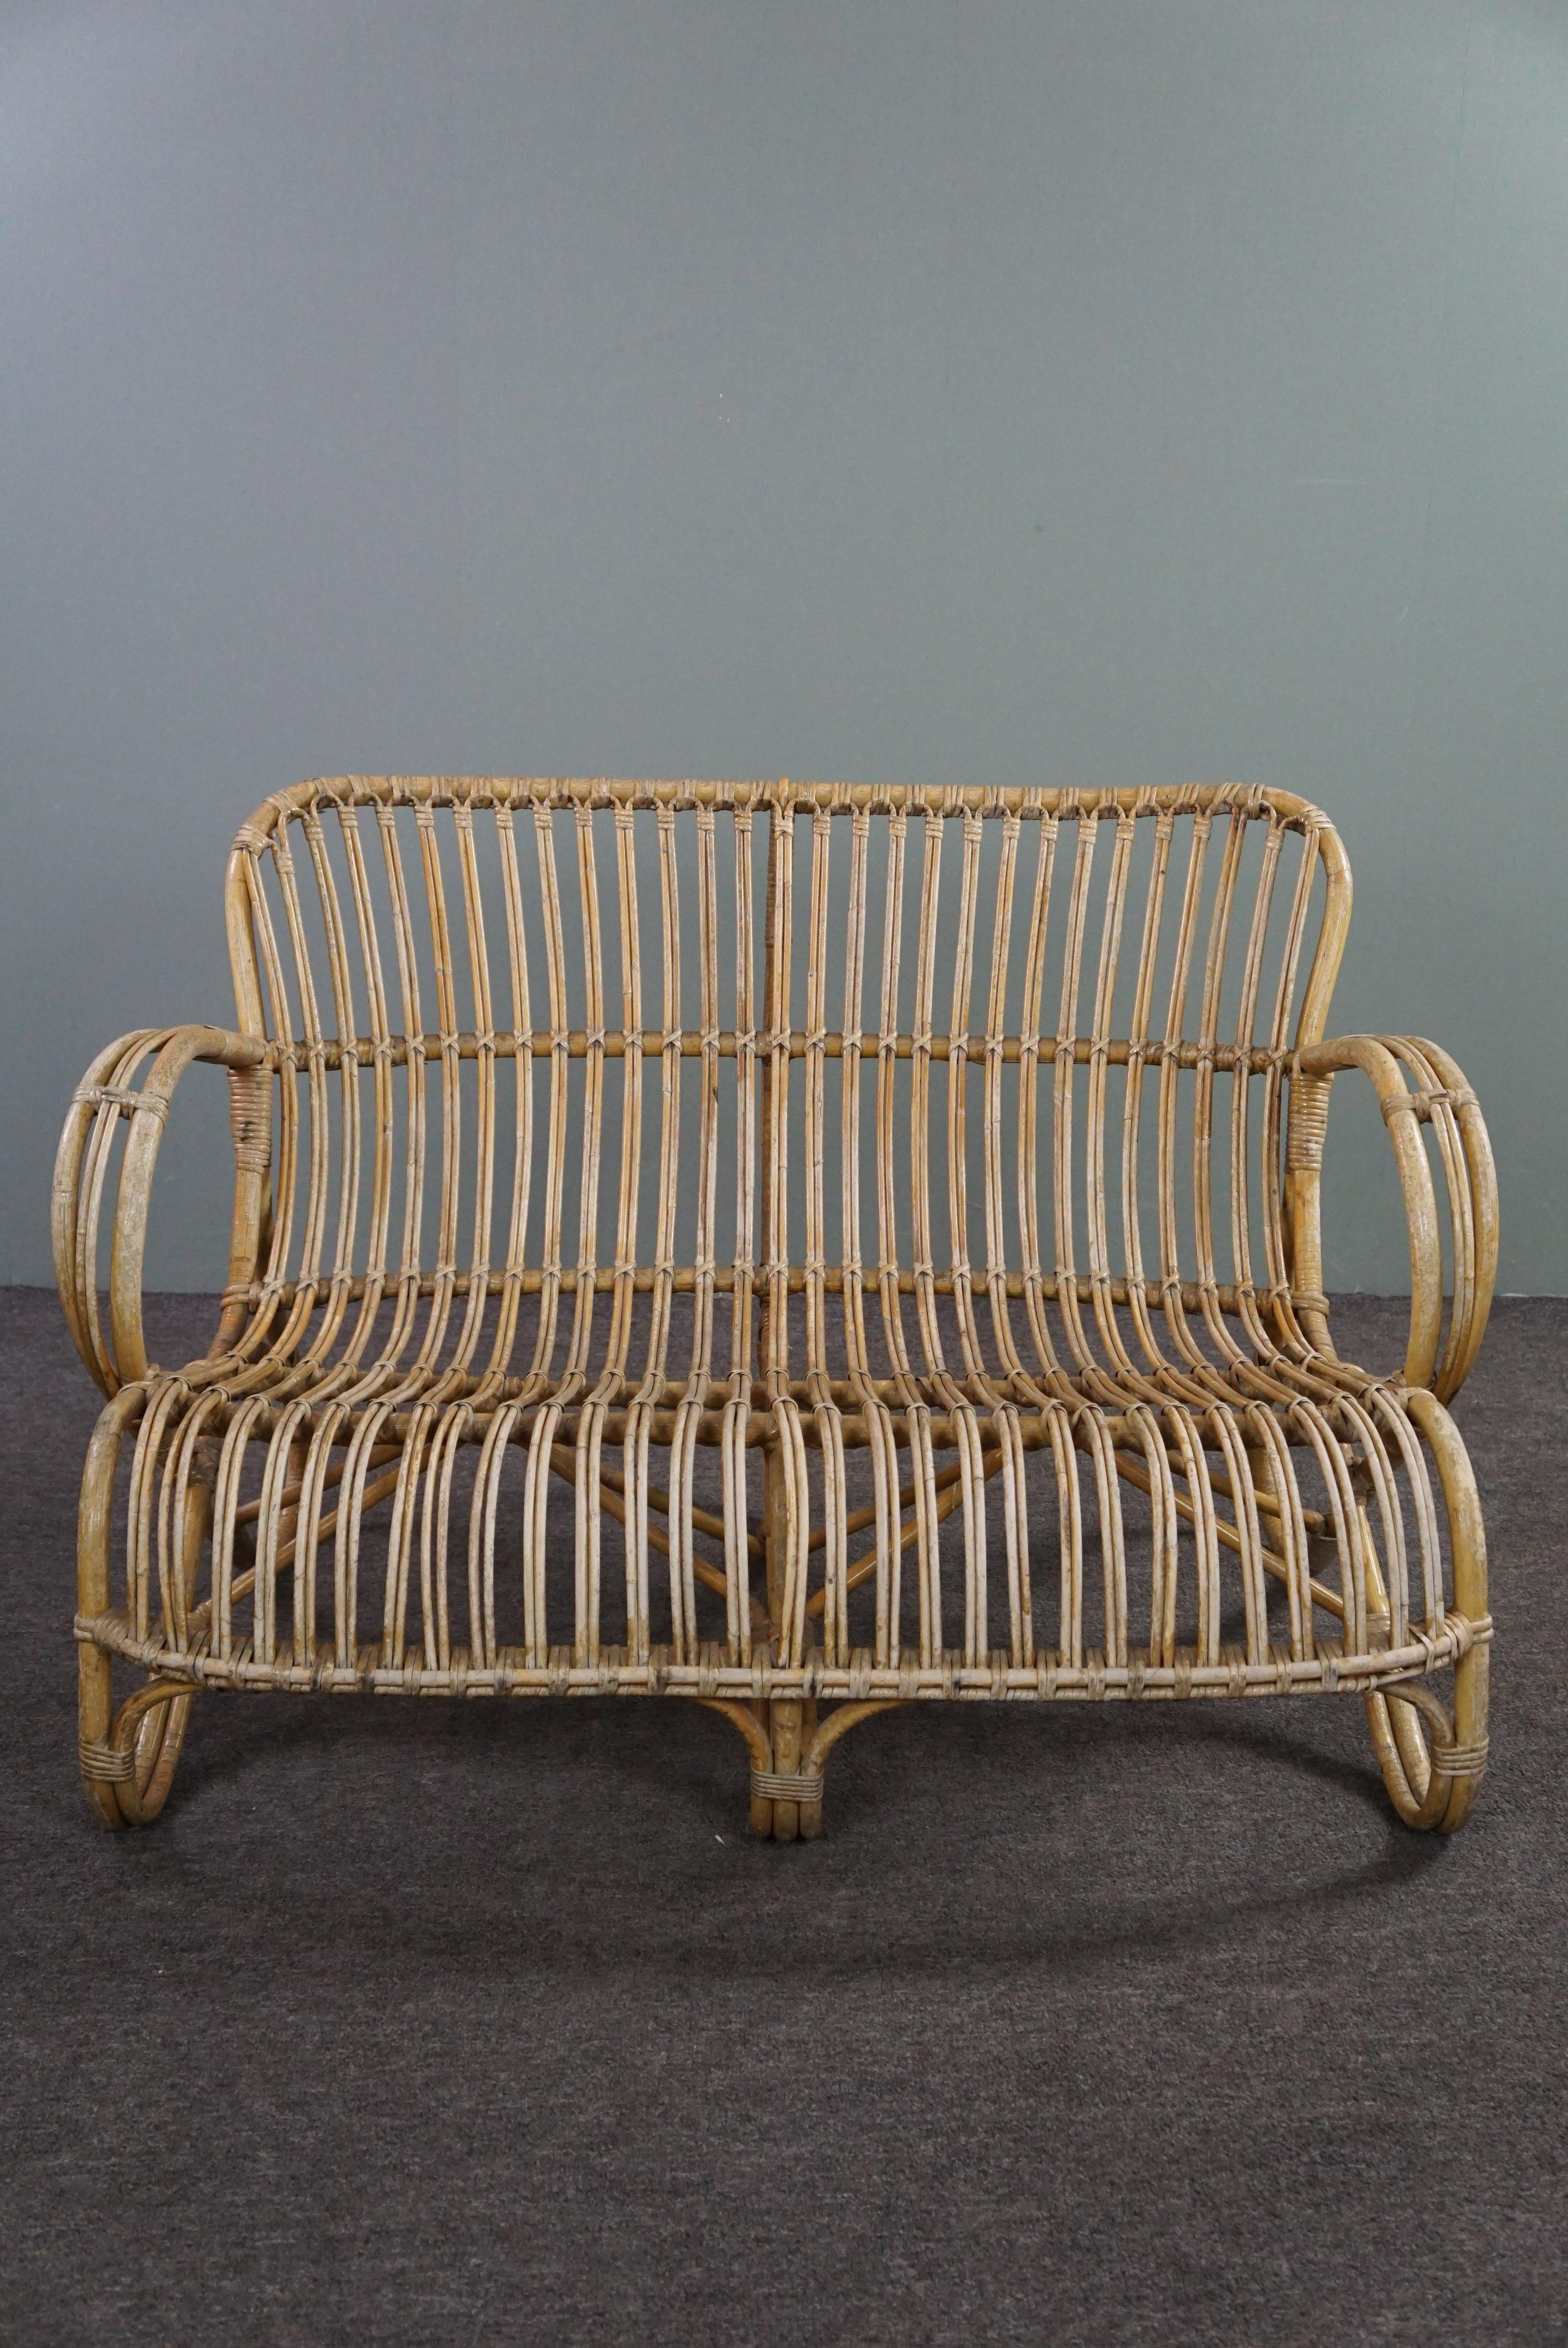 Das Rattansofa Belse 8, 2-Sitzer, hat ein zeitloses Design, eine schön geformte und ergonomische Rückenlehne und schöne geschwungene Details.

Dieses Sofa wurde in den 1950er Jahren aus hochwertigen Naturmaterialien handgefertigt. Dieses